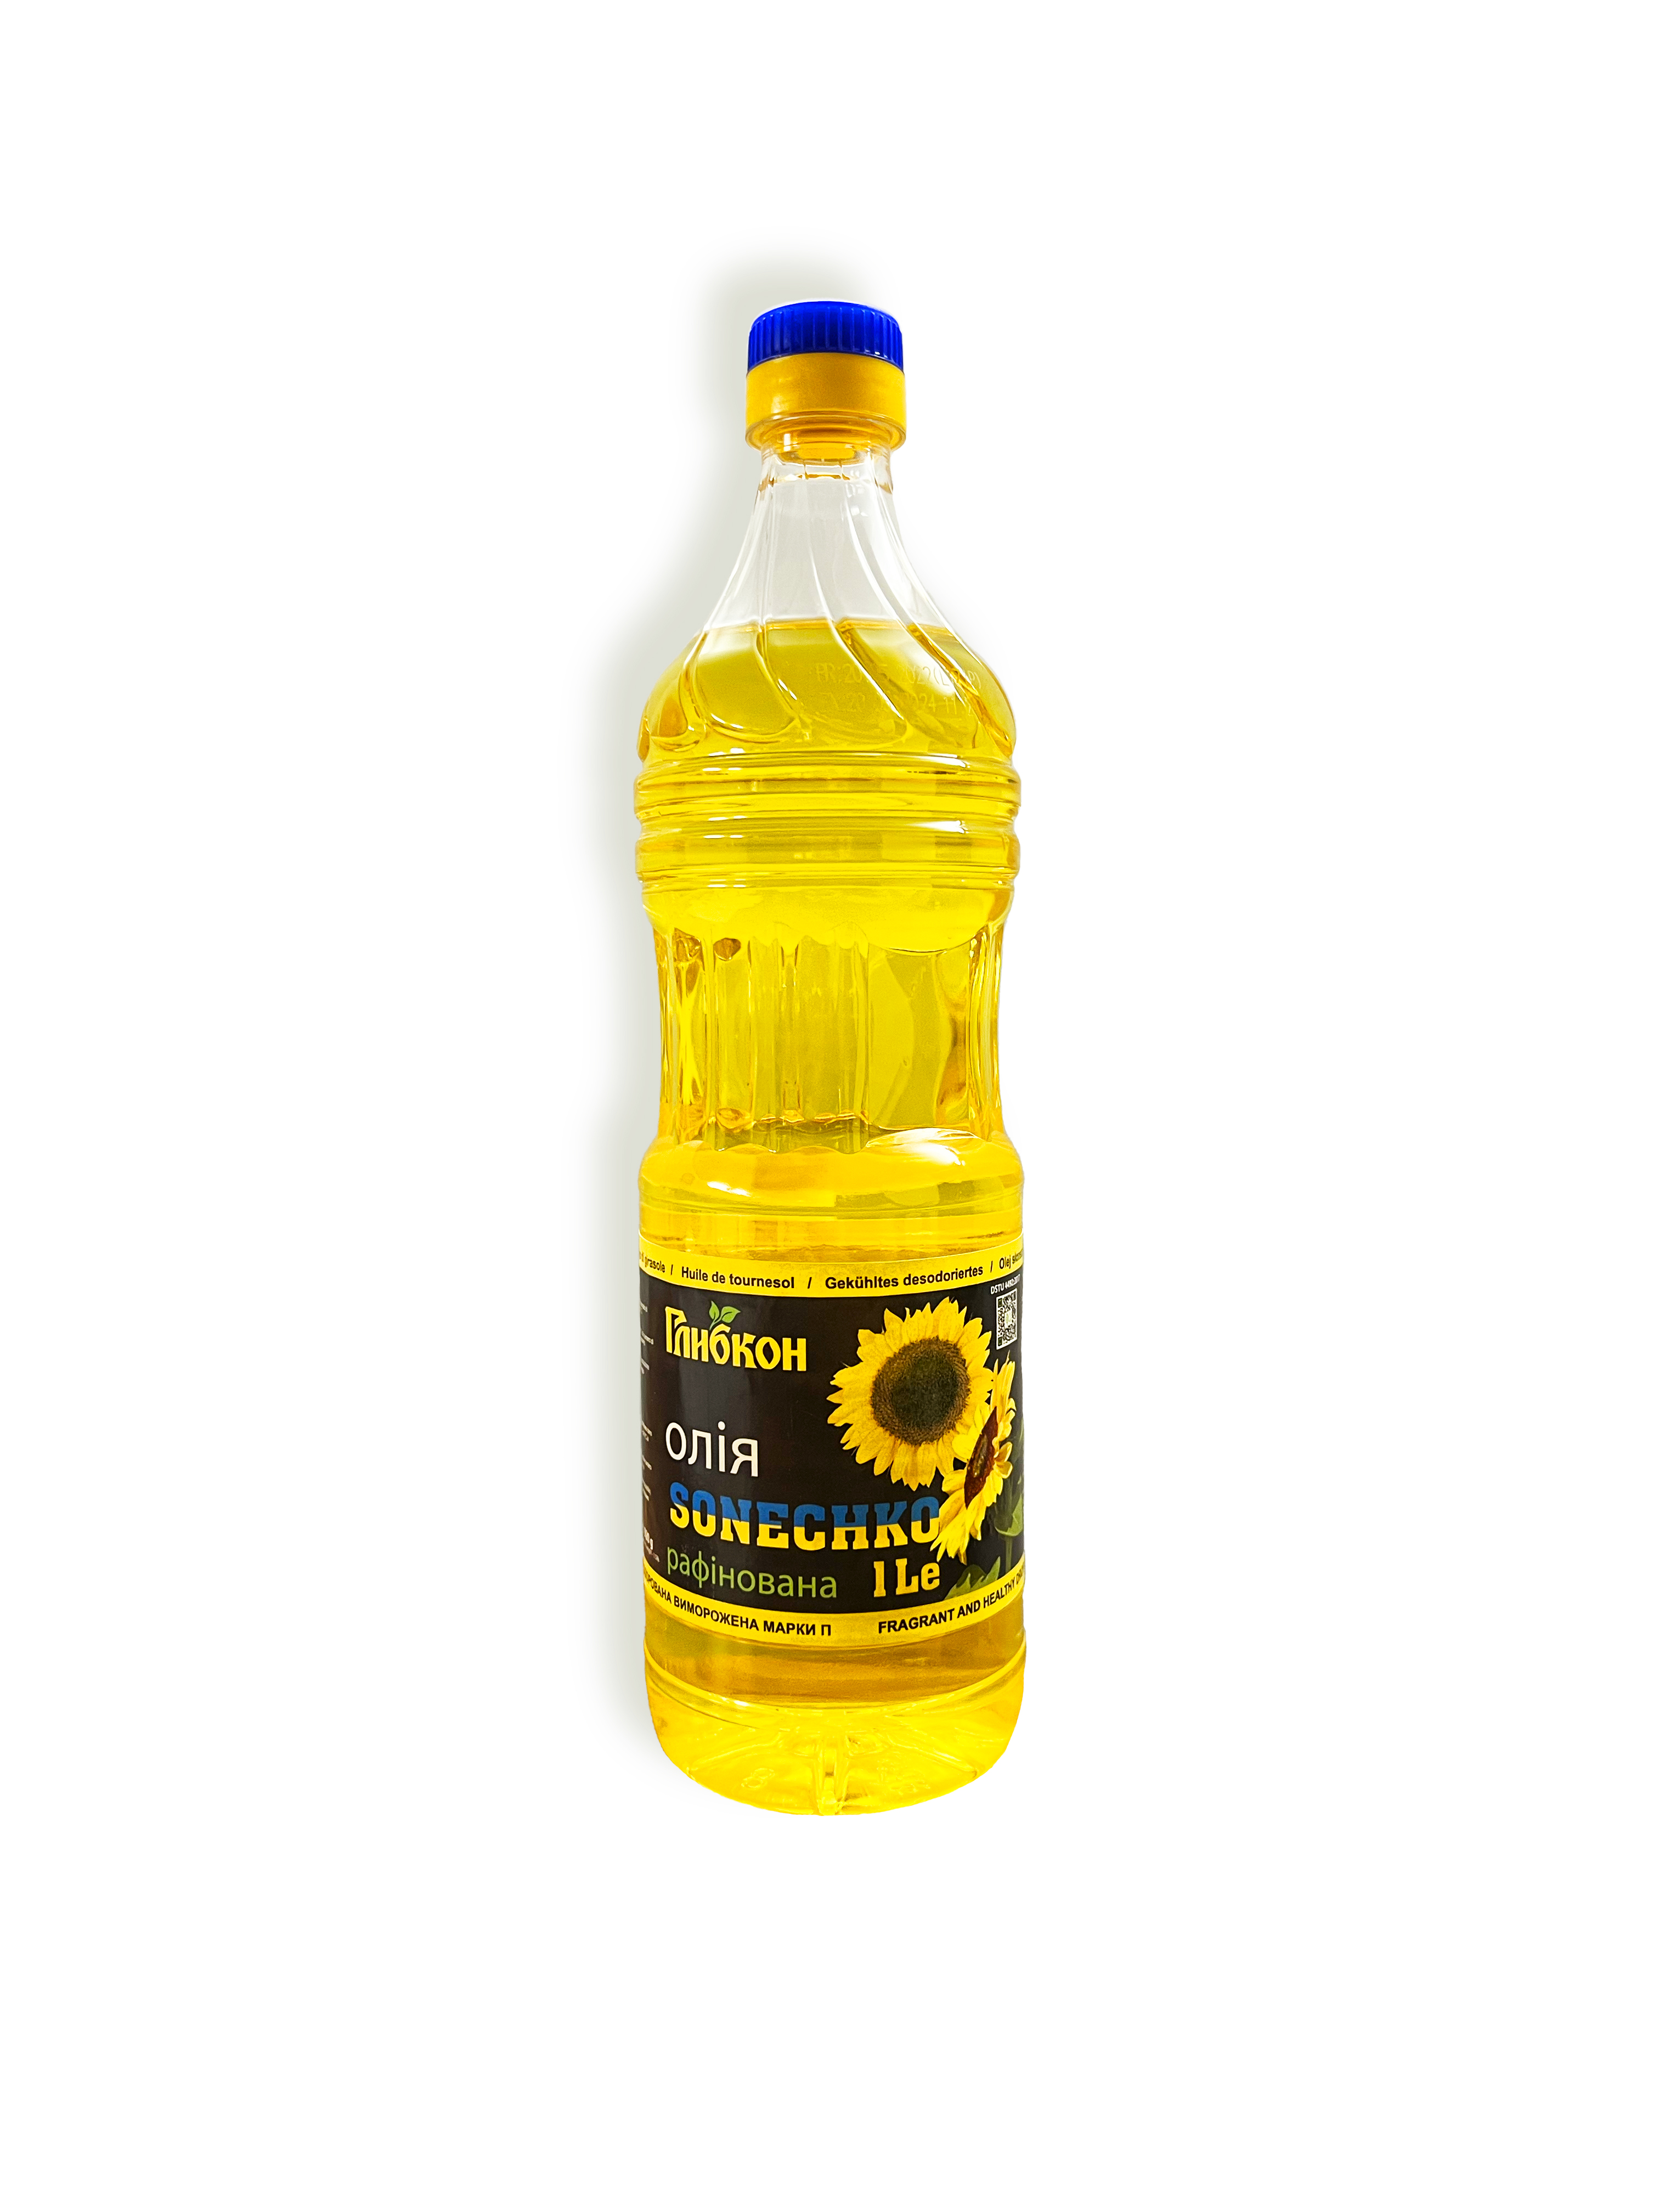 Sunflower oil TM “Glibkon”